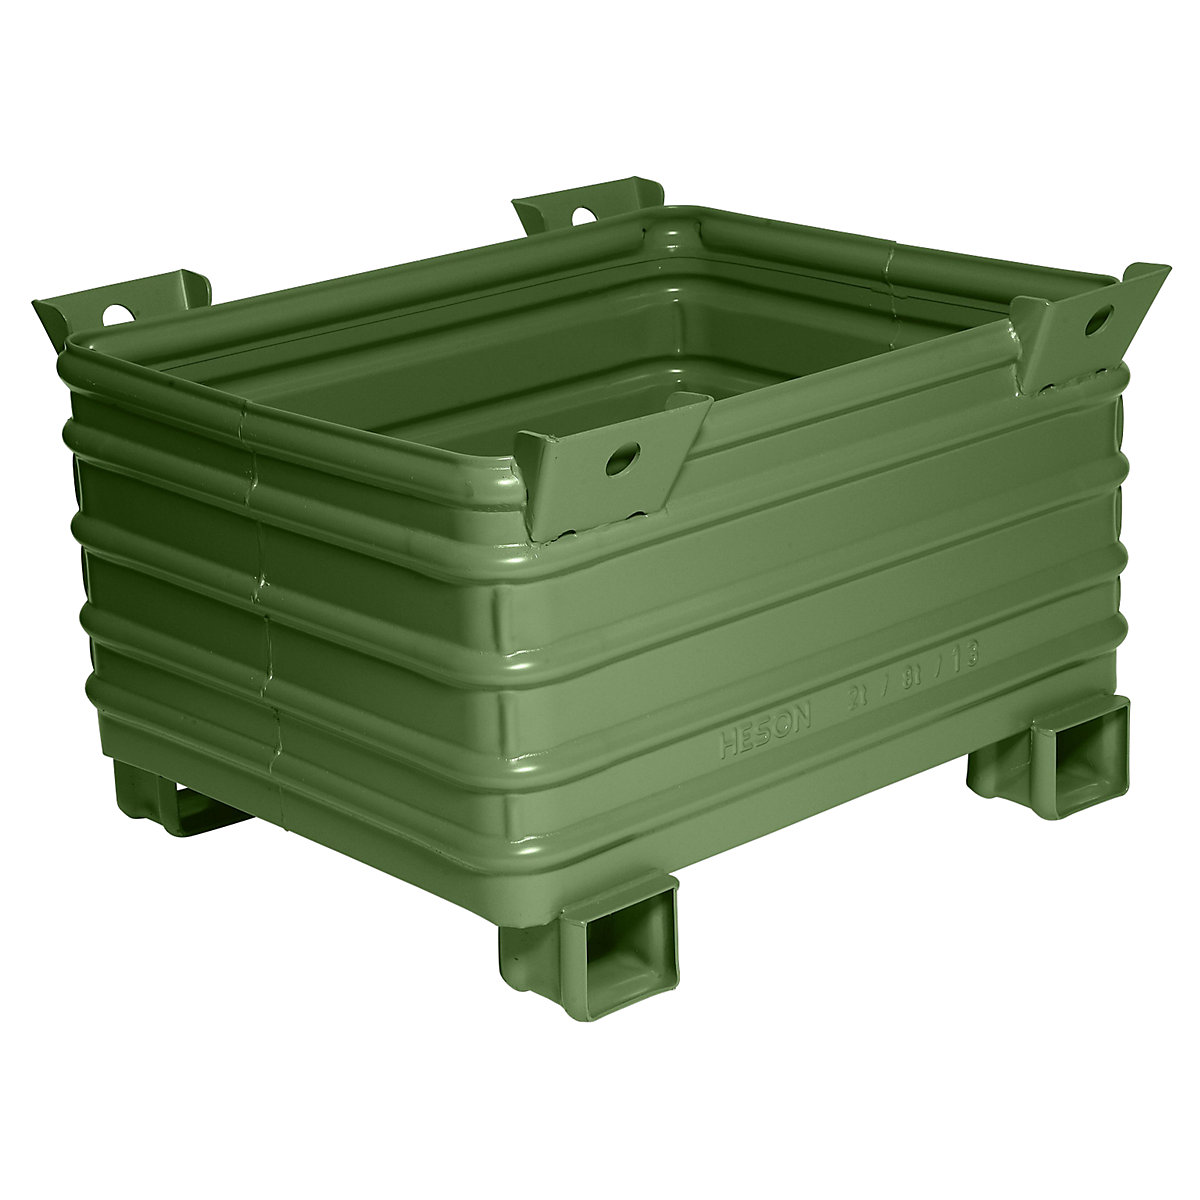 Caisse-palette pour charges lourdes – Heson, l x L 800 x 1000 mm, pieds en U, laqué vert, 1 pièce et +-7